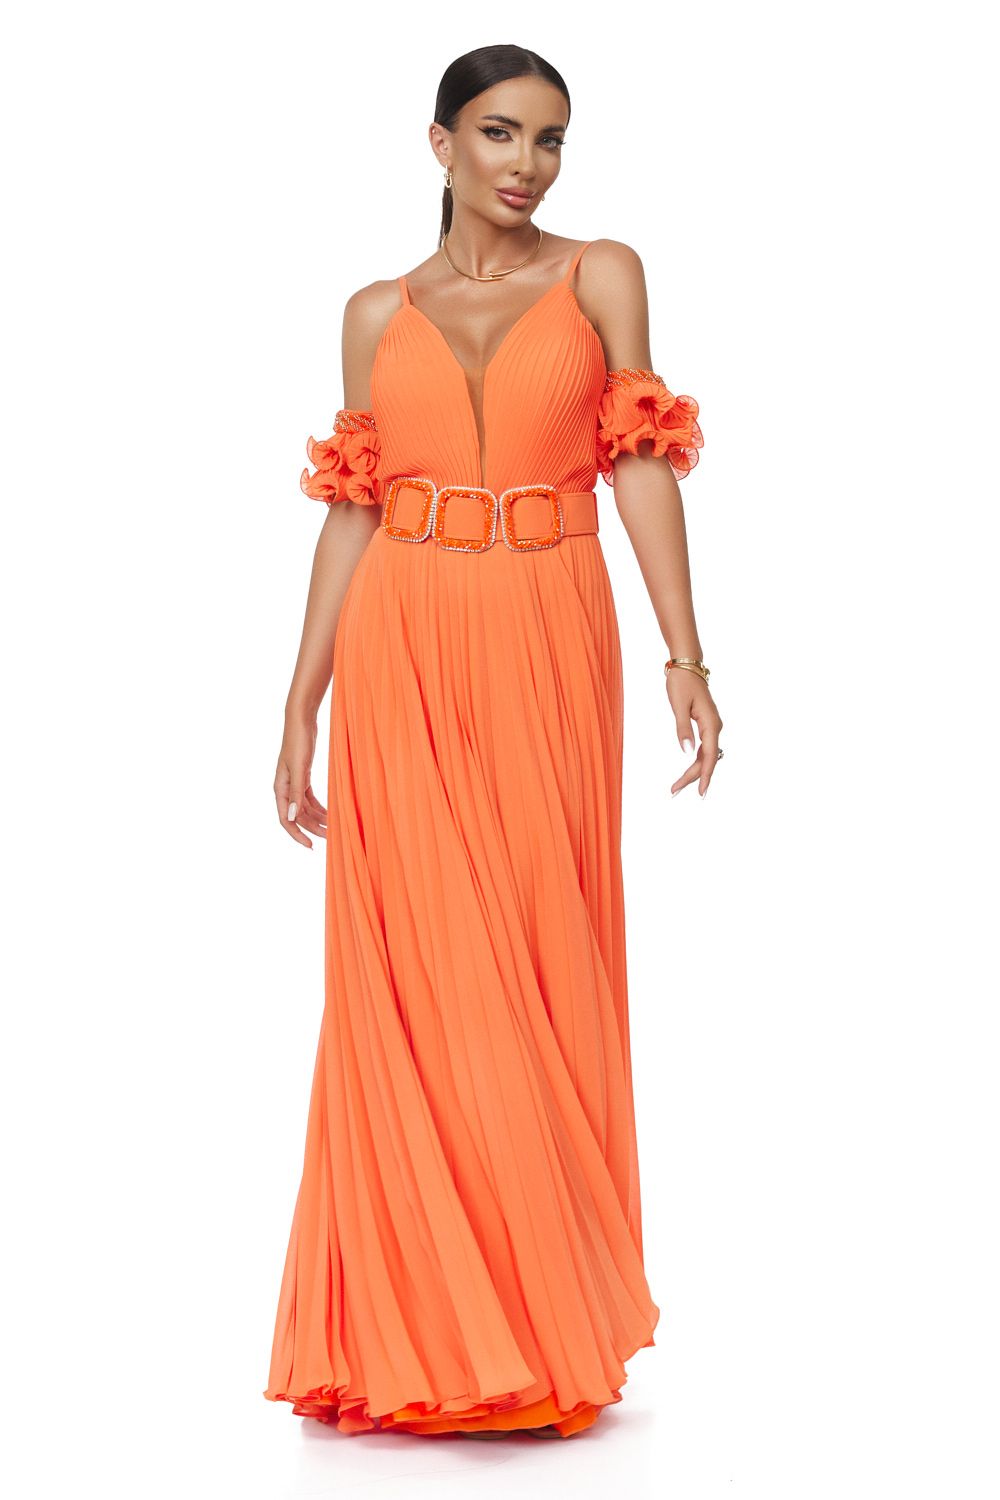 Eremy Bogas hosszú narancssárga női ruha